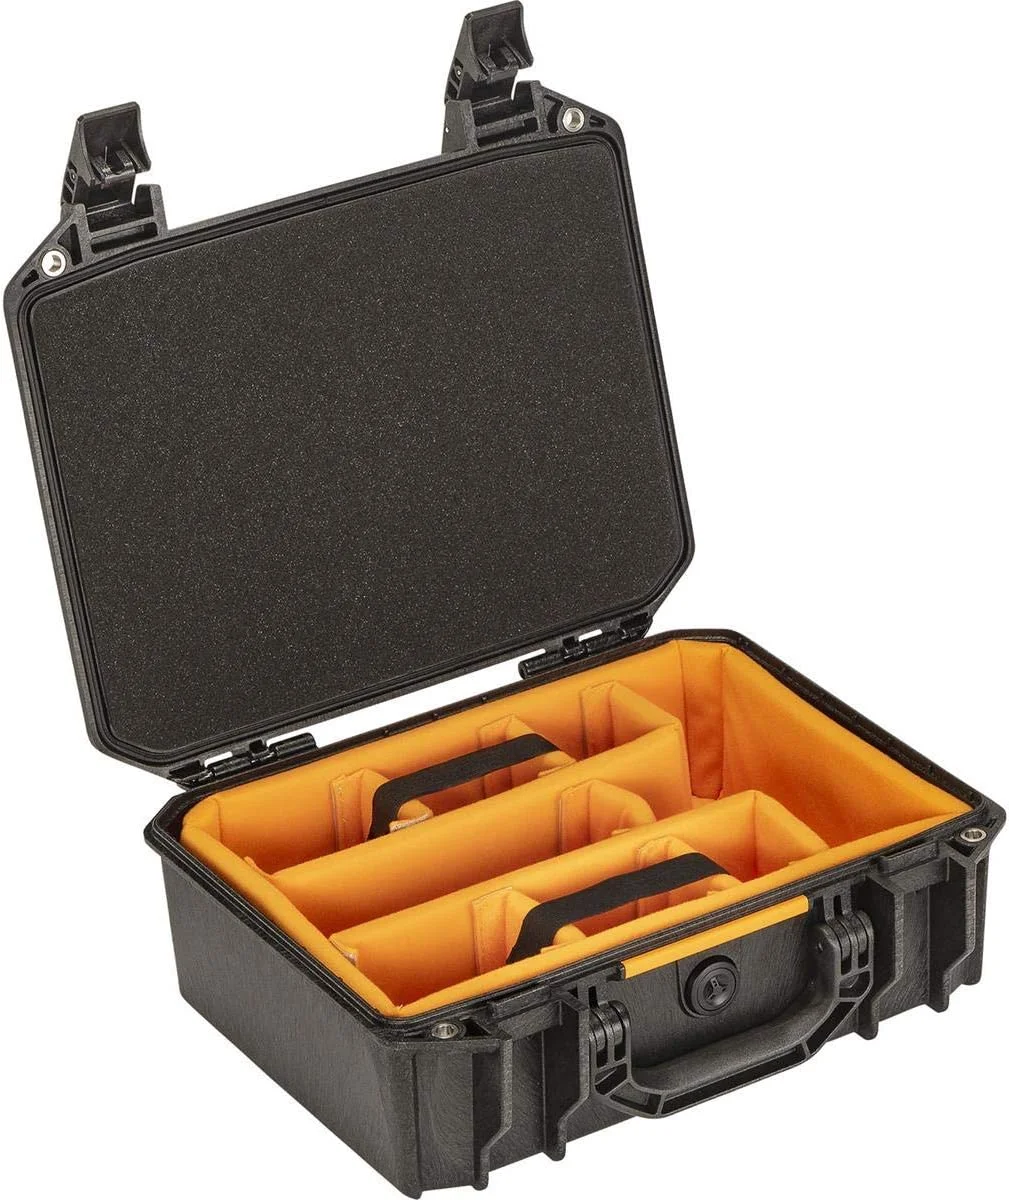  Pelican Vault V200 Multi-Purpose Hard Case